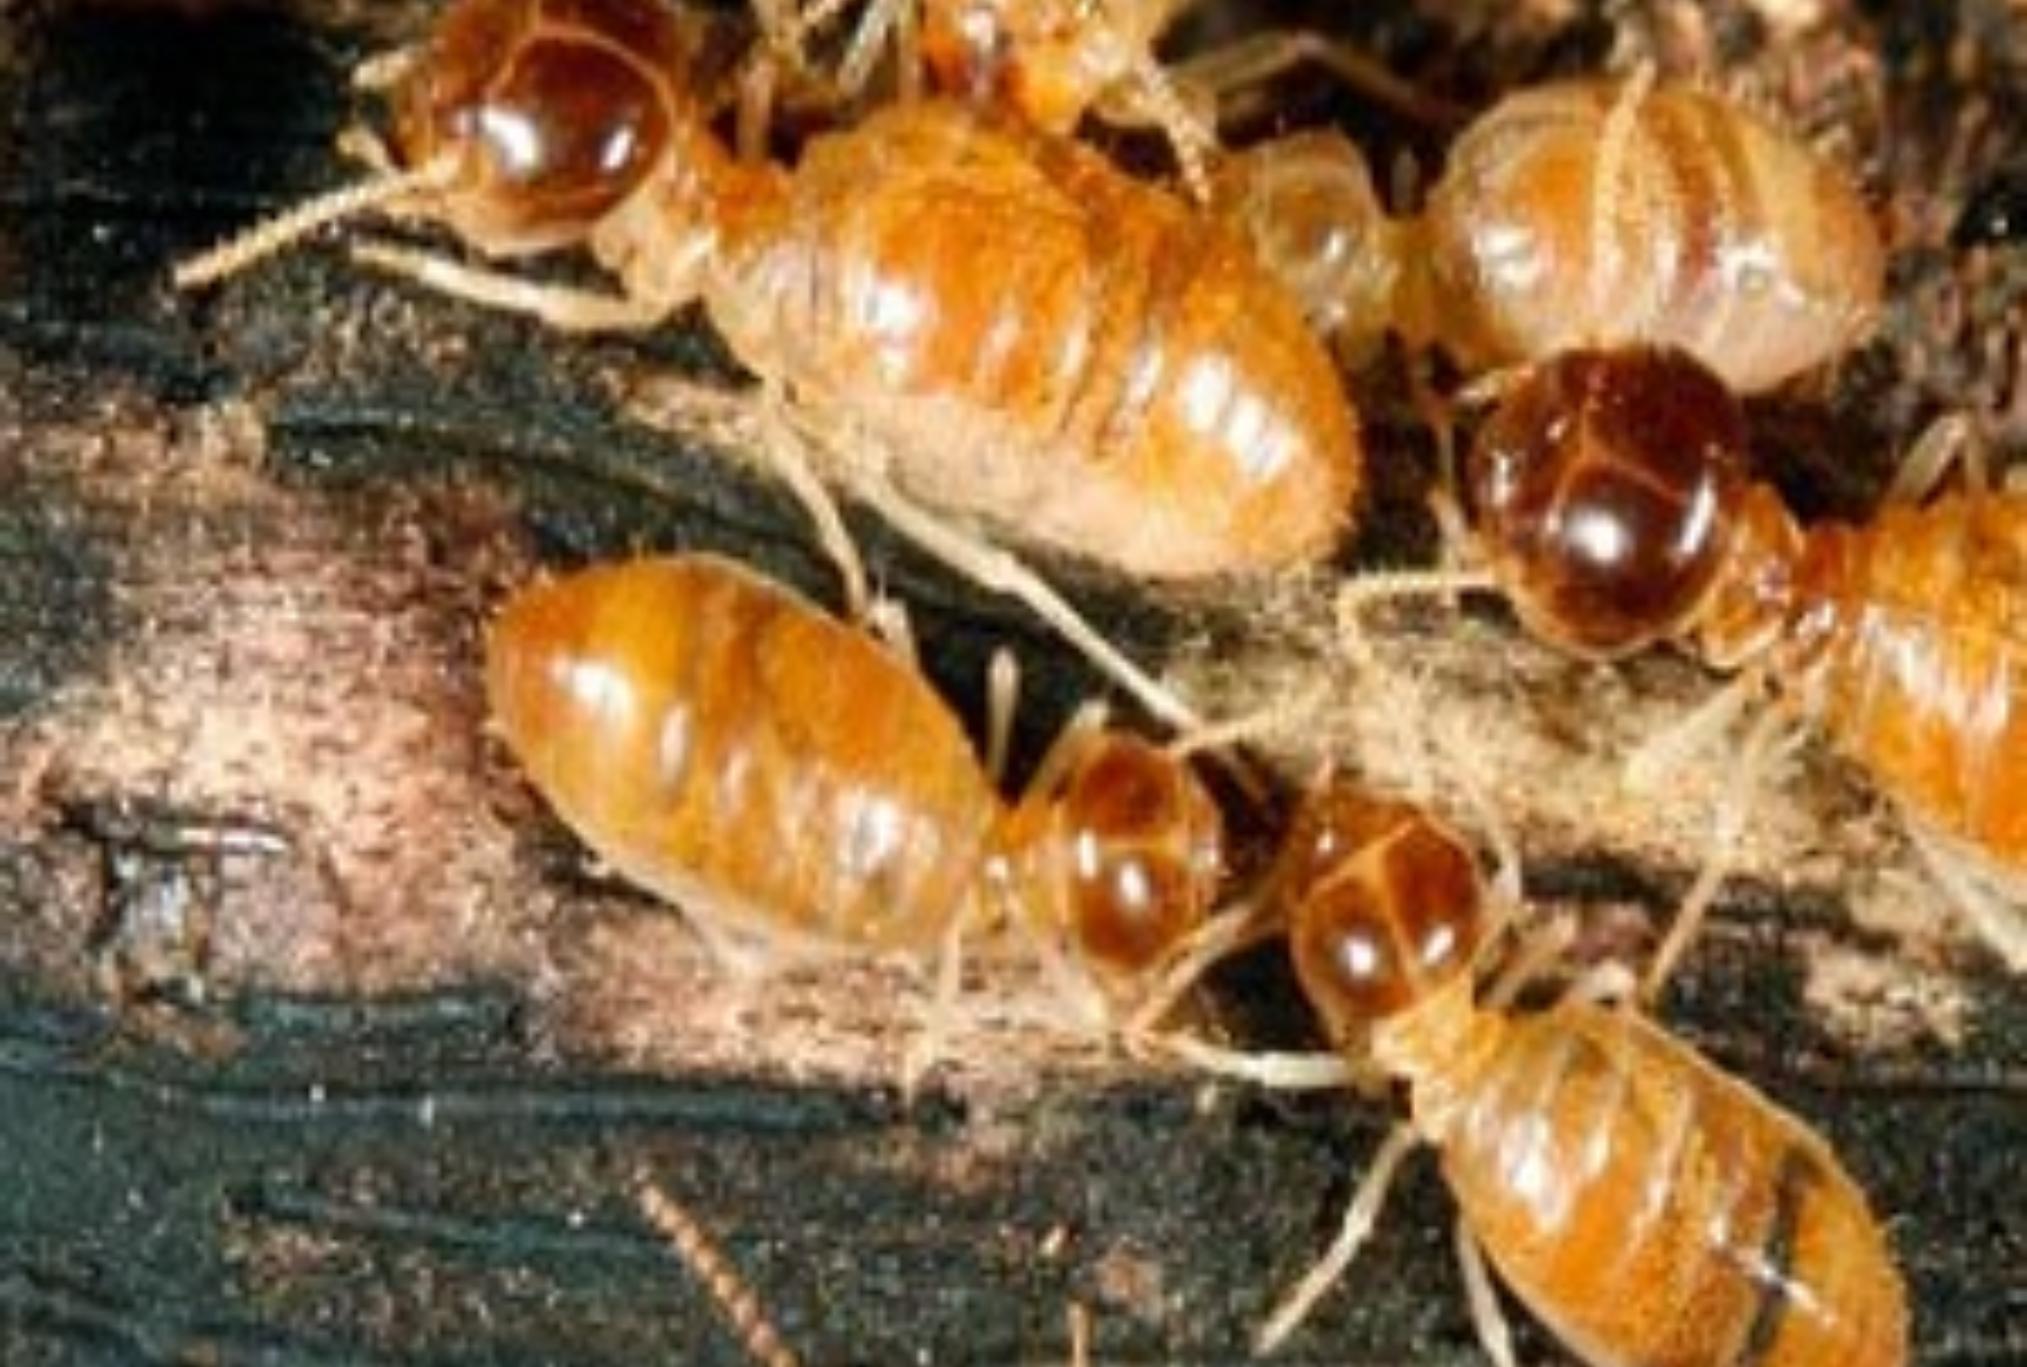 Σαράκι σκαθάρια και τερμίτες: Πώς να προστατέψεις το σπίτι και τα έπιπλά σου 